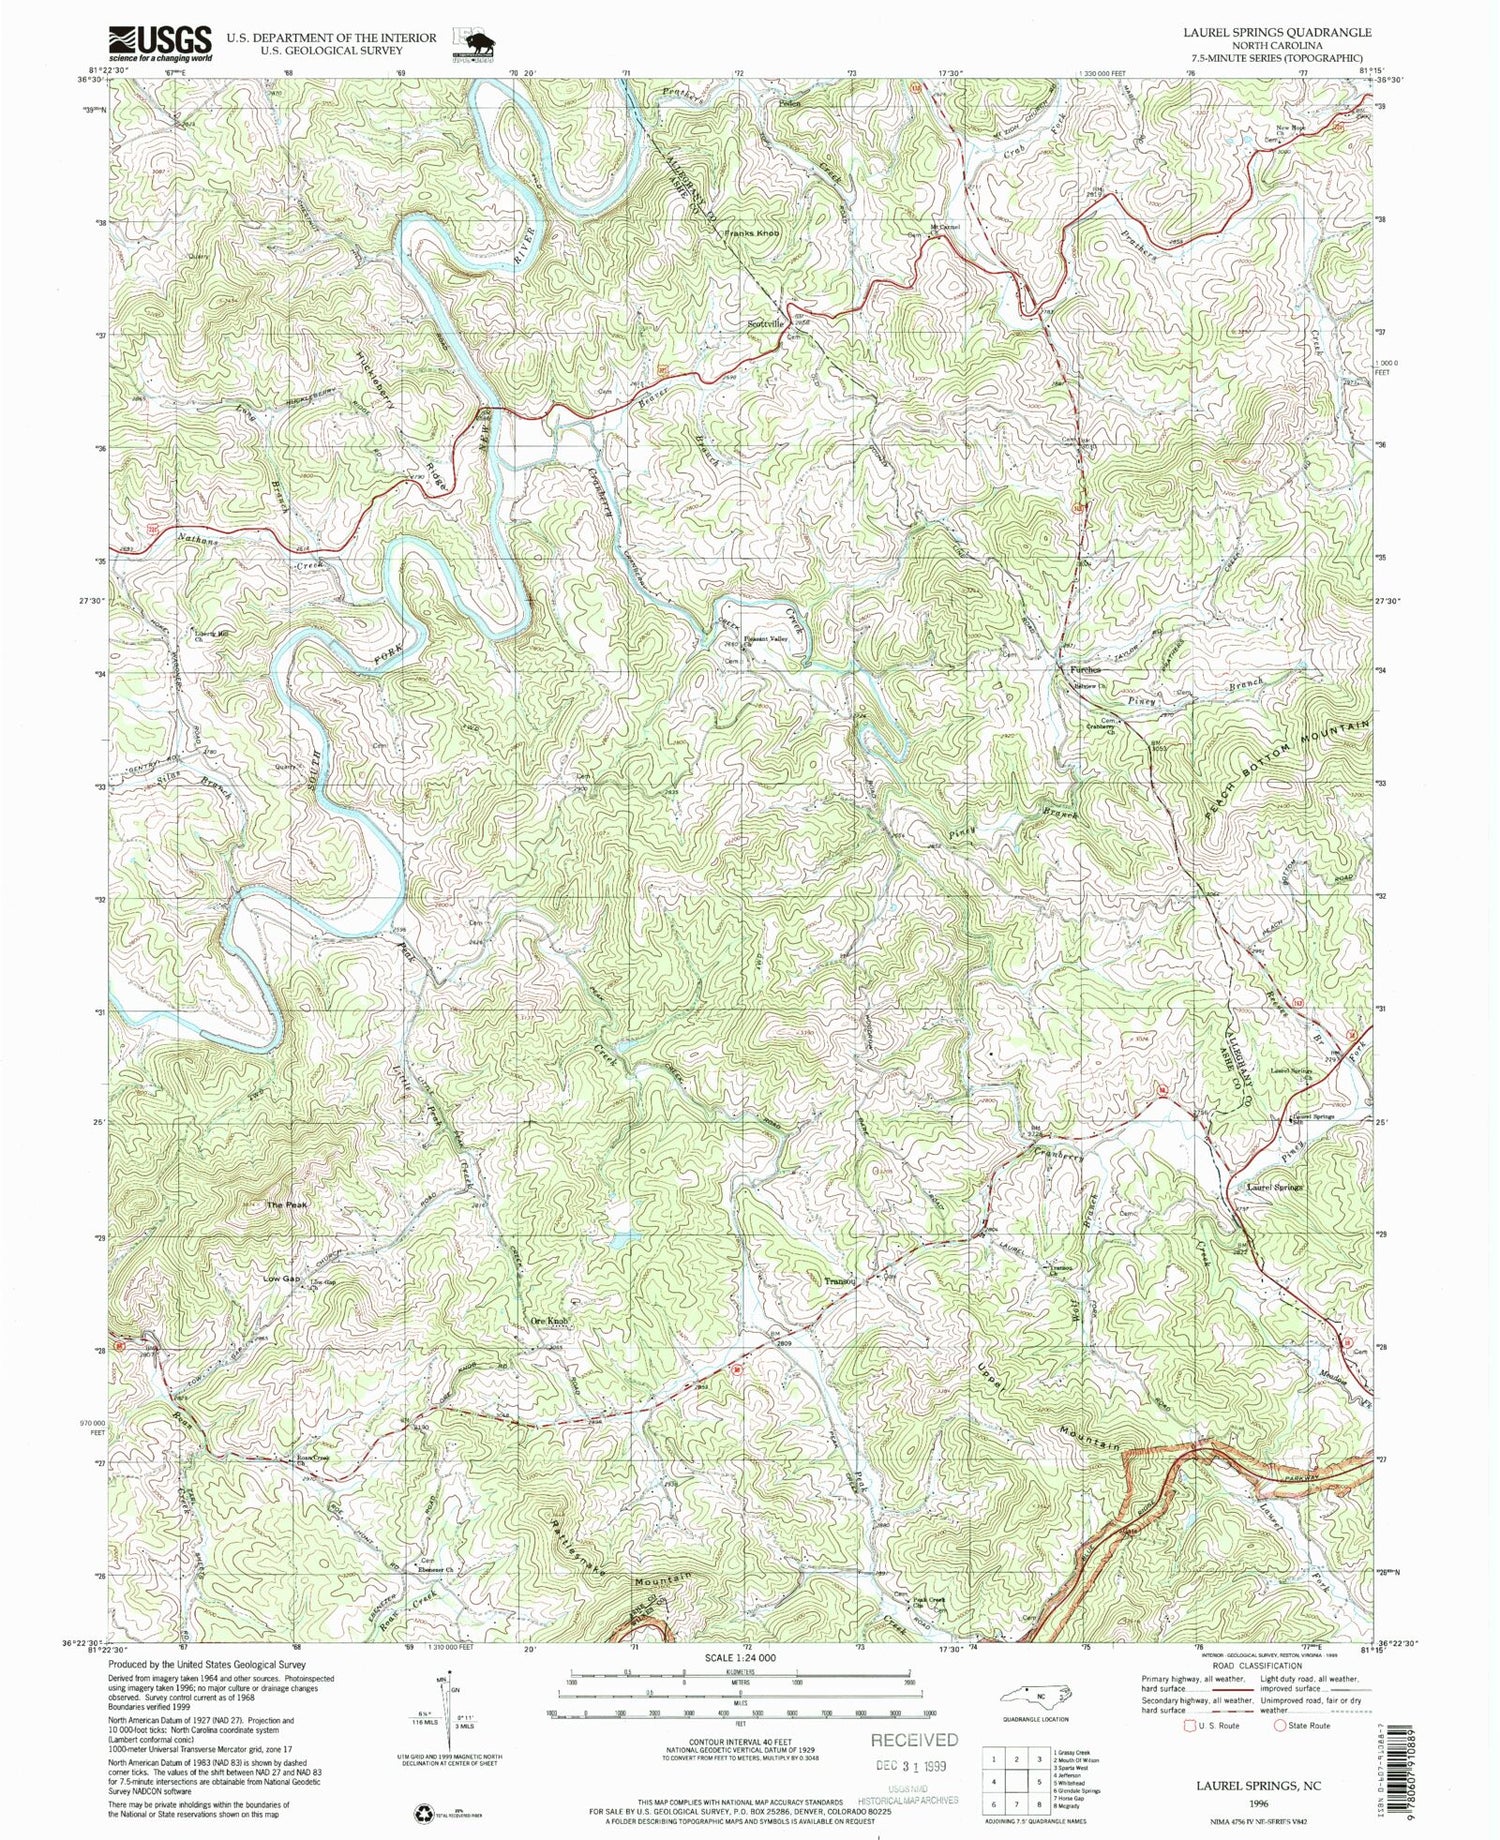 Classic USGS Laurel Springs North Carolina 7.5'x7.5' Topo Map Image